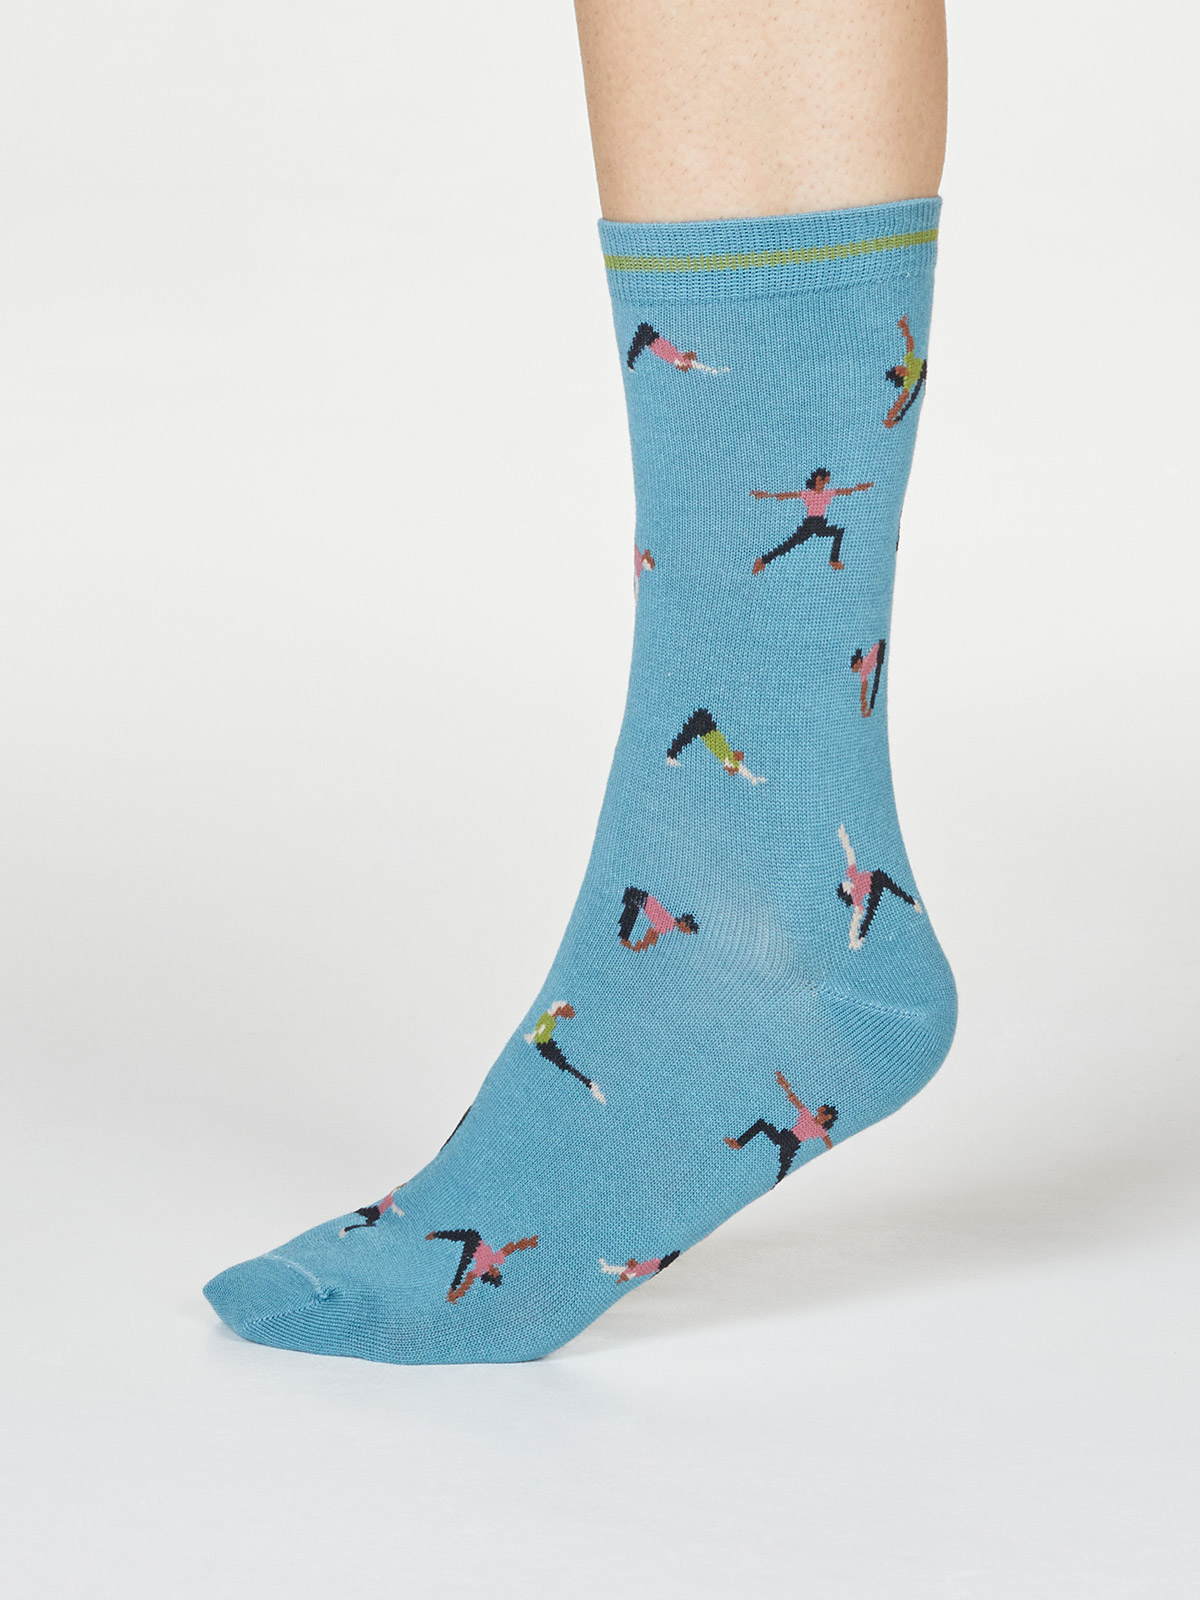 Geschenk-Box Mornie Yogi mit Damen-Socken